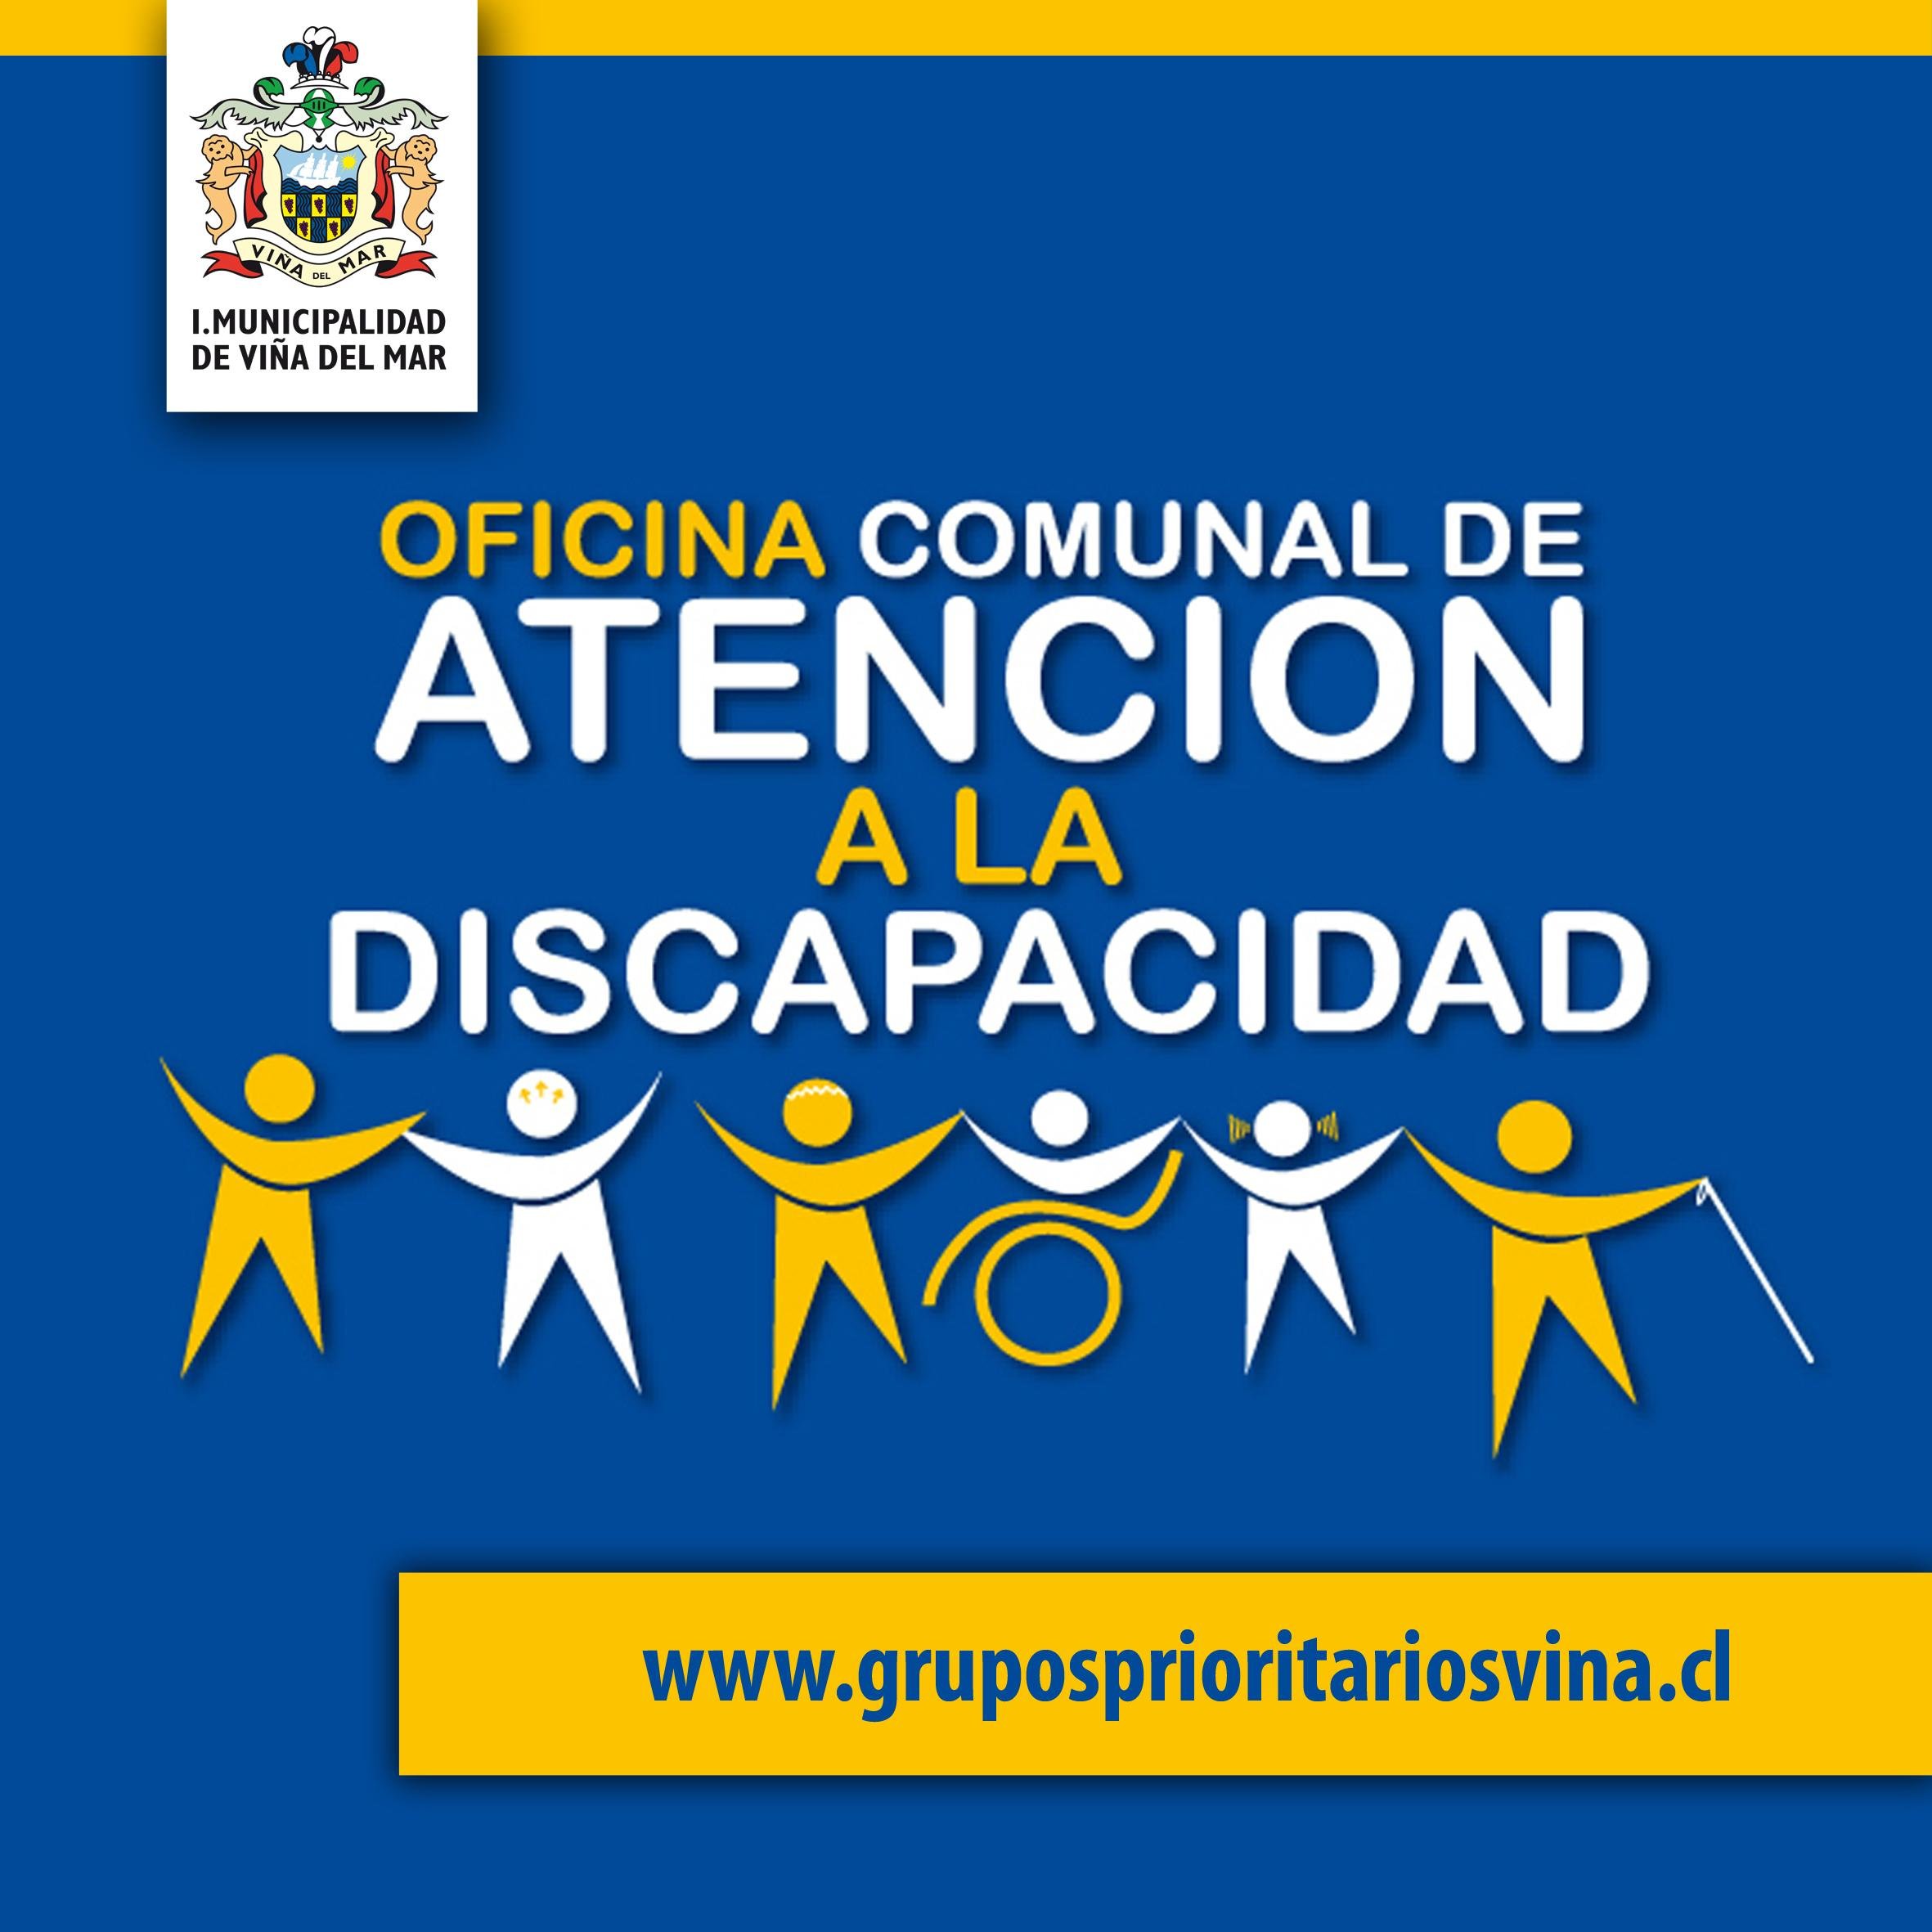 Cuenta Oficial de la Oficina de Atención a la Discapacidad de la Ilustre Municipalidad de Viña del Mar / Calle Valparaiso 729 / Tel: 32 218 5420